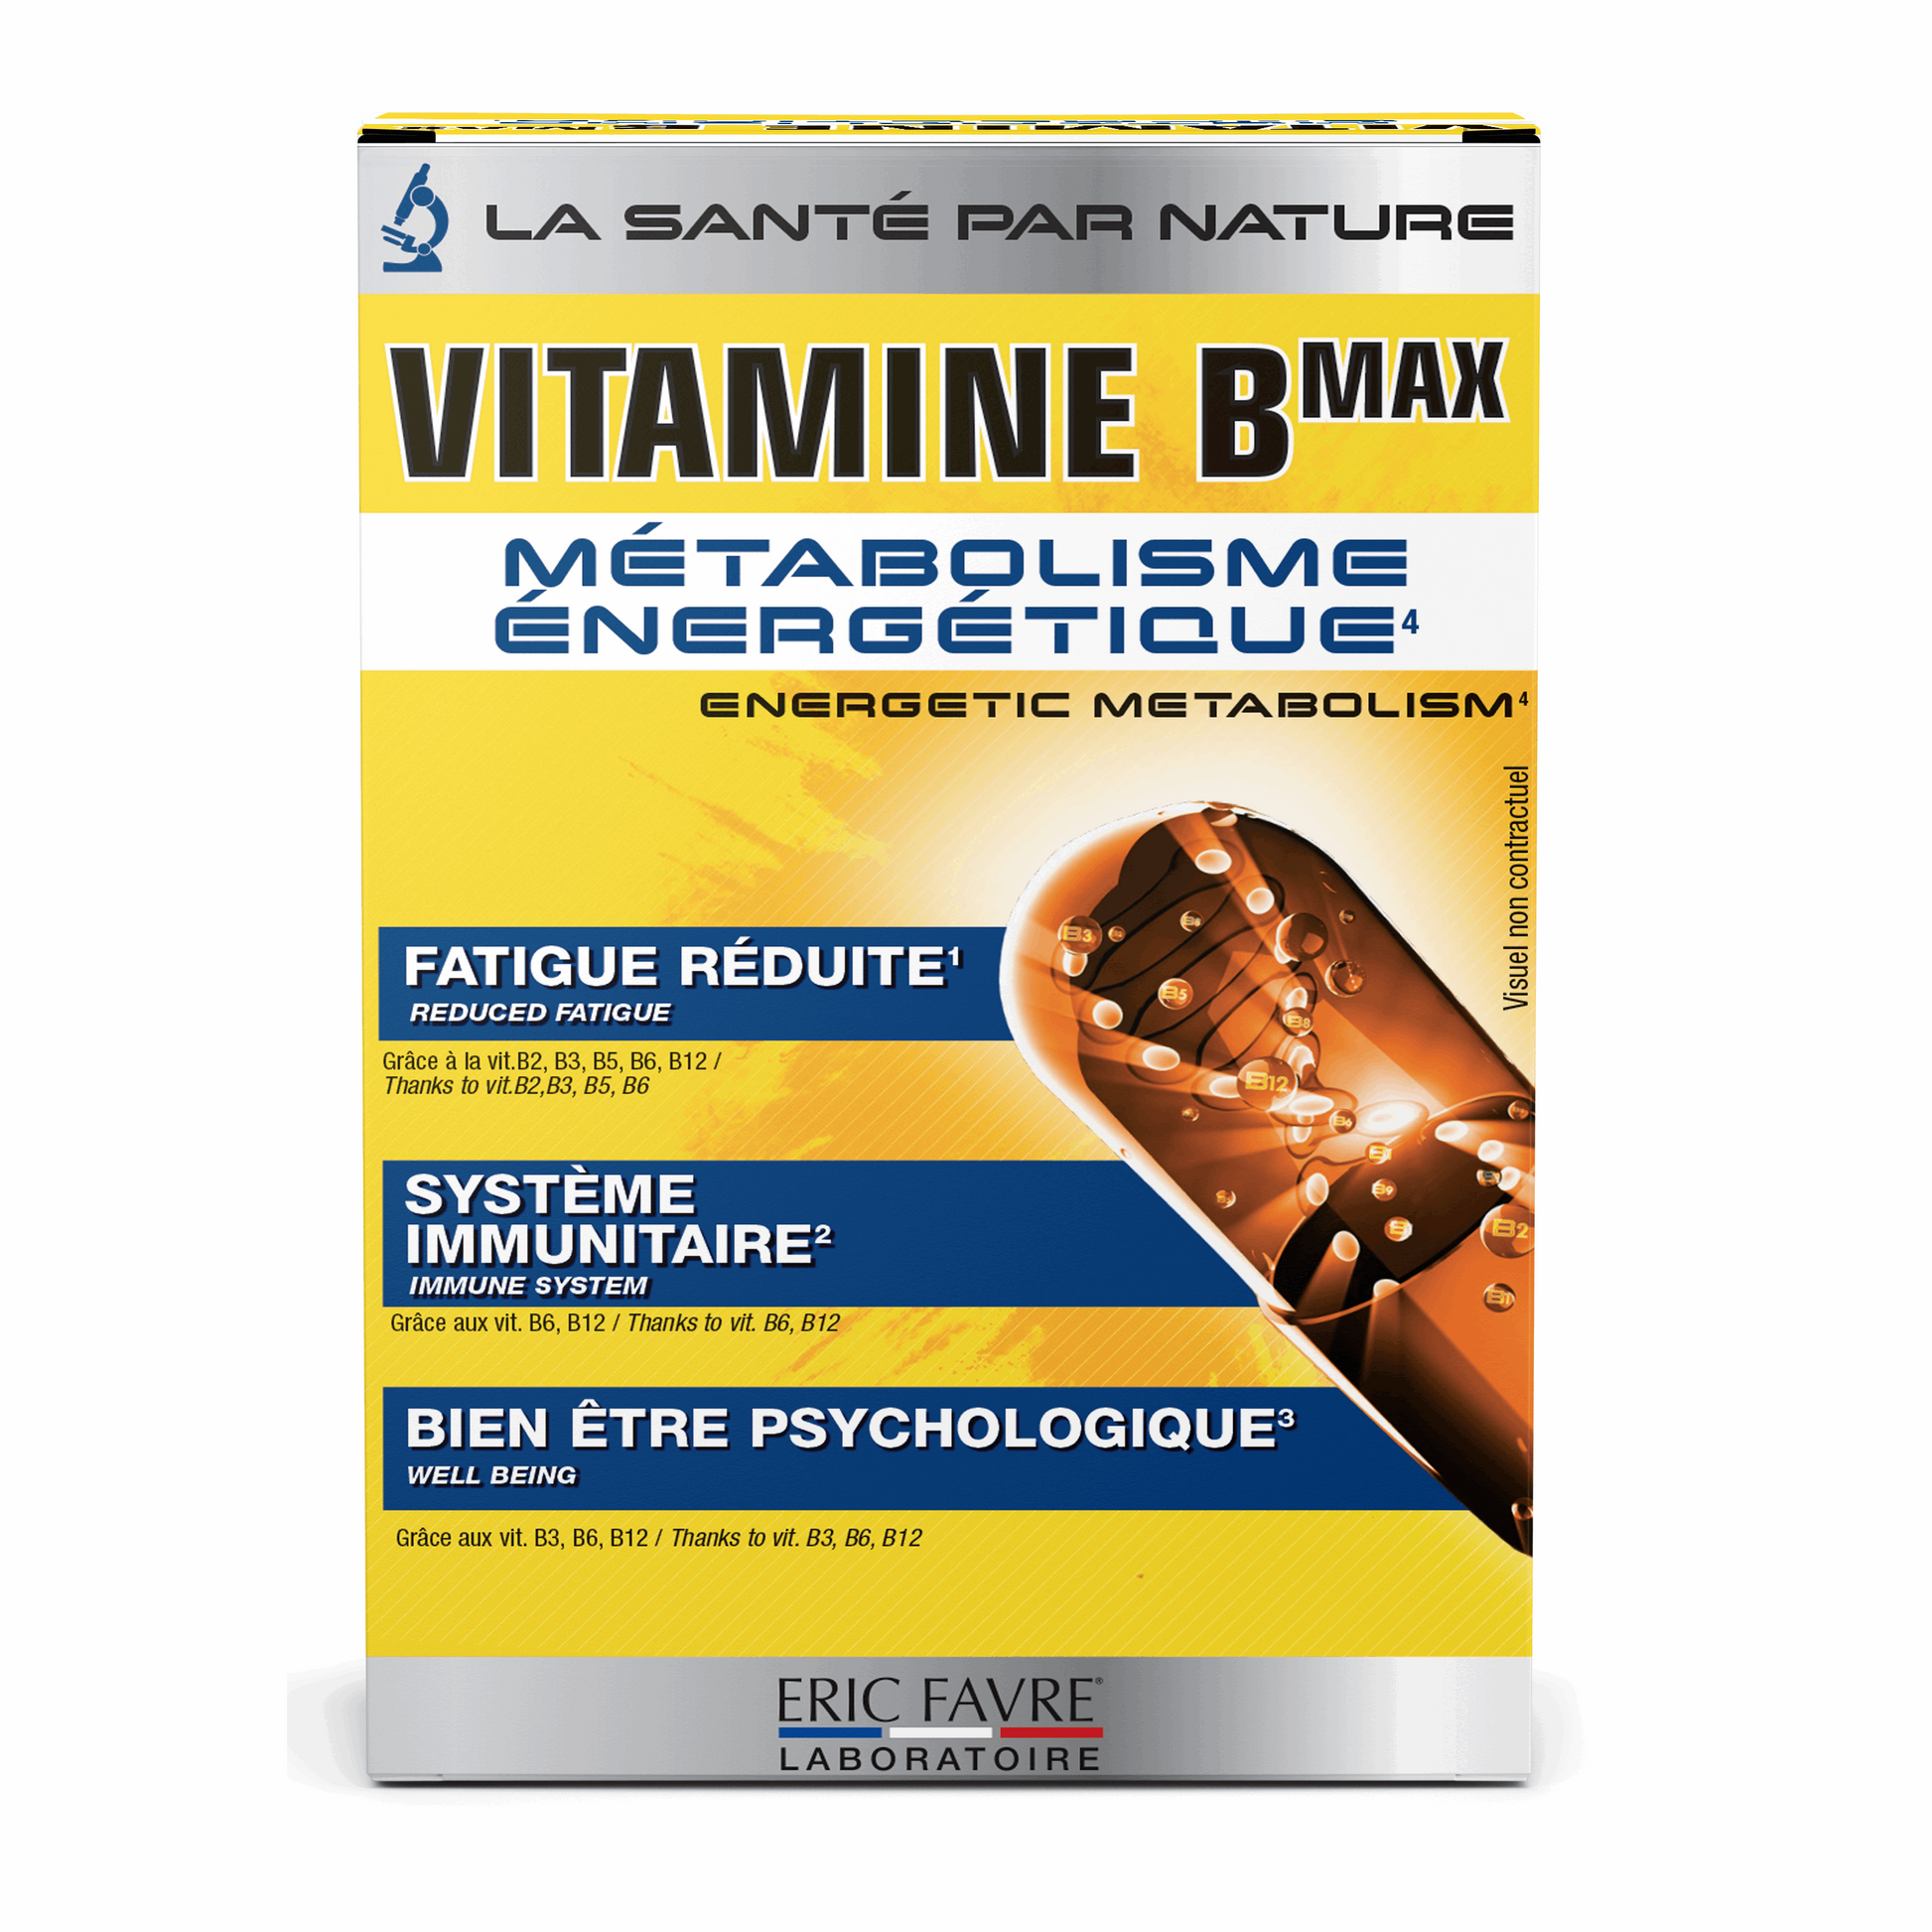 Vitamine B max 90 capsules - ERIC FAVRE - Market Fit